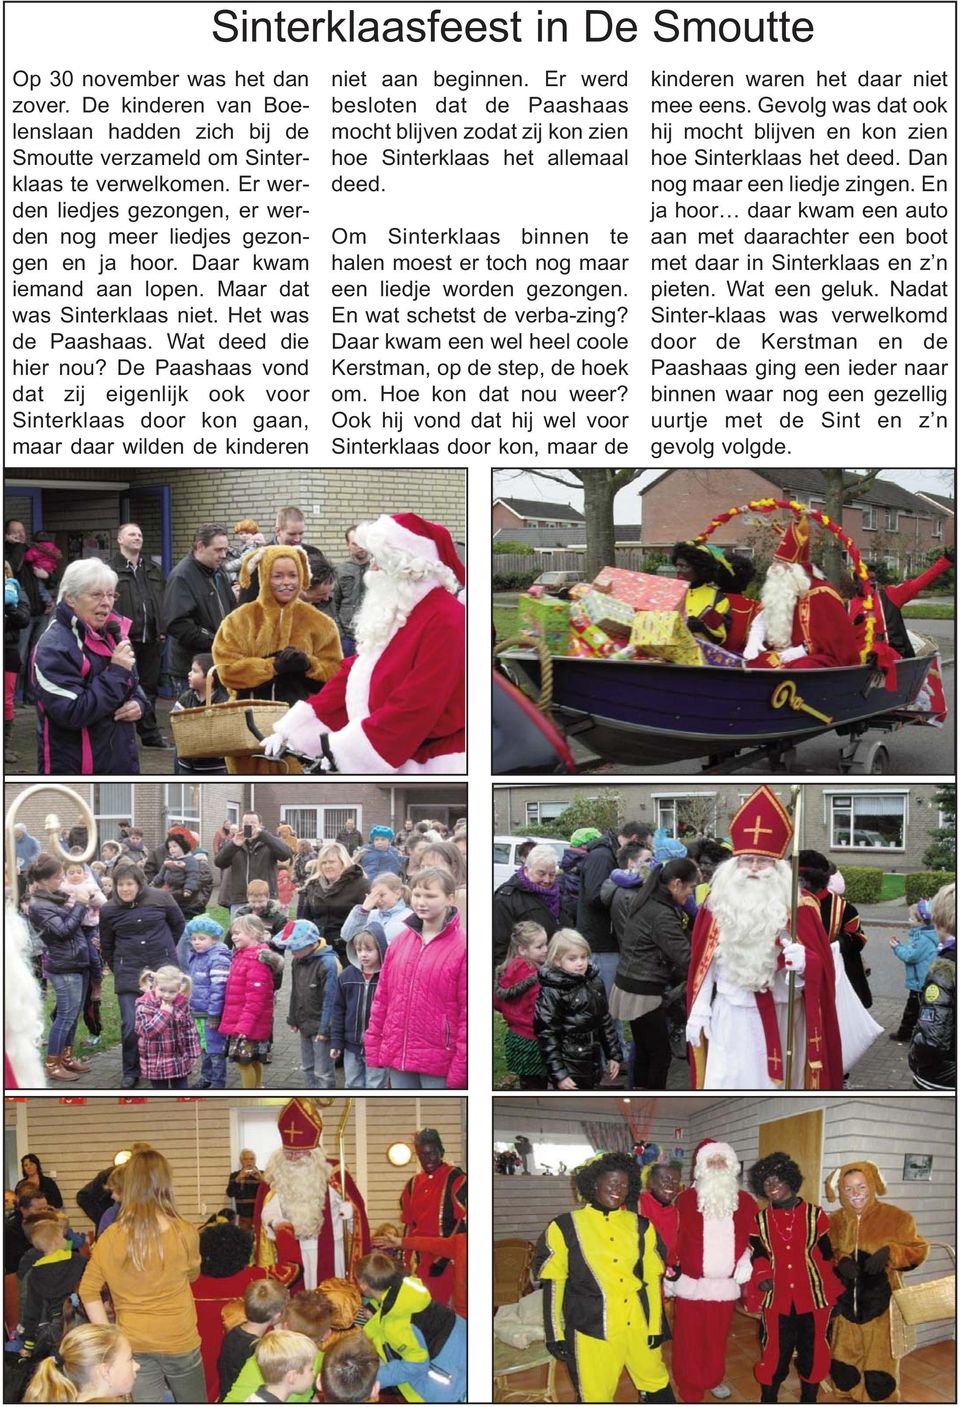 De Paashaas vond dat zij eigenlijk ook voor Sinterklaas door kon gaan, maar daar wilden de kinderen Sinterklaasfeest in De Smoutte niet aan beginnen.